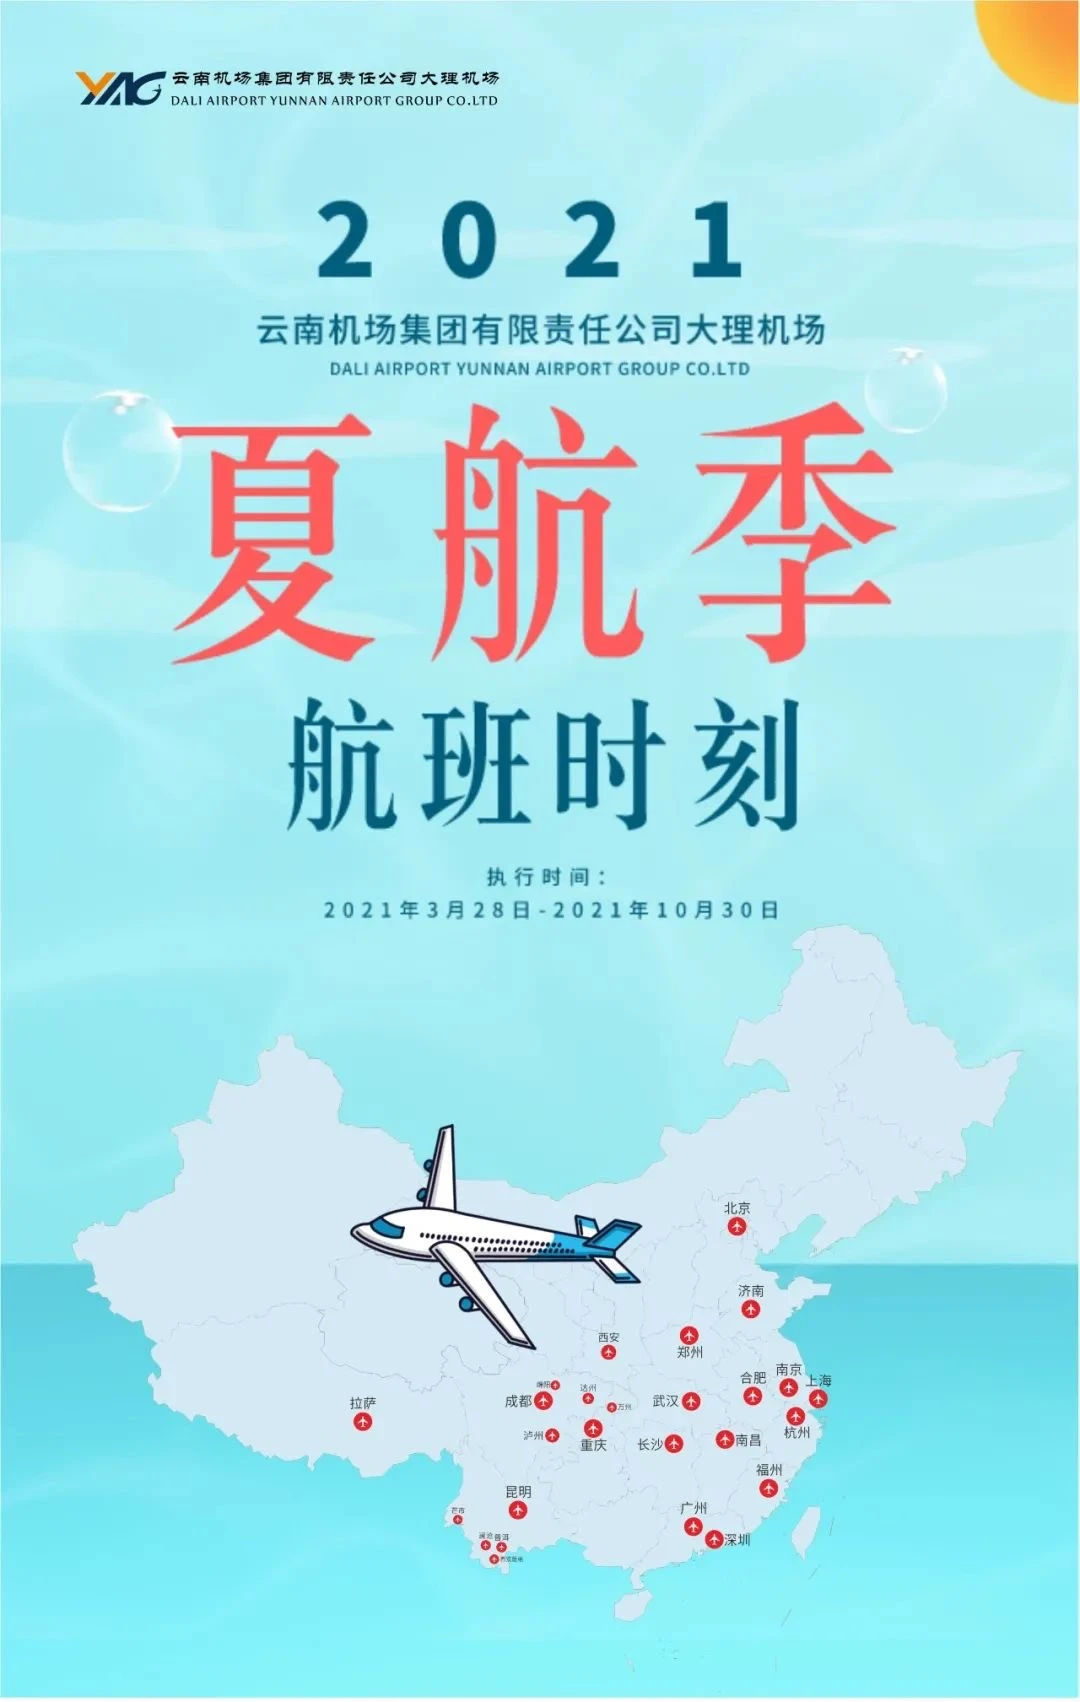 大理机场开通南昌、济南、万州、达州、普洱、澜沧等多条新航线